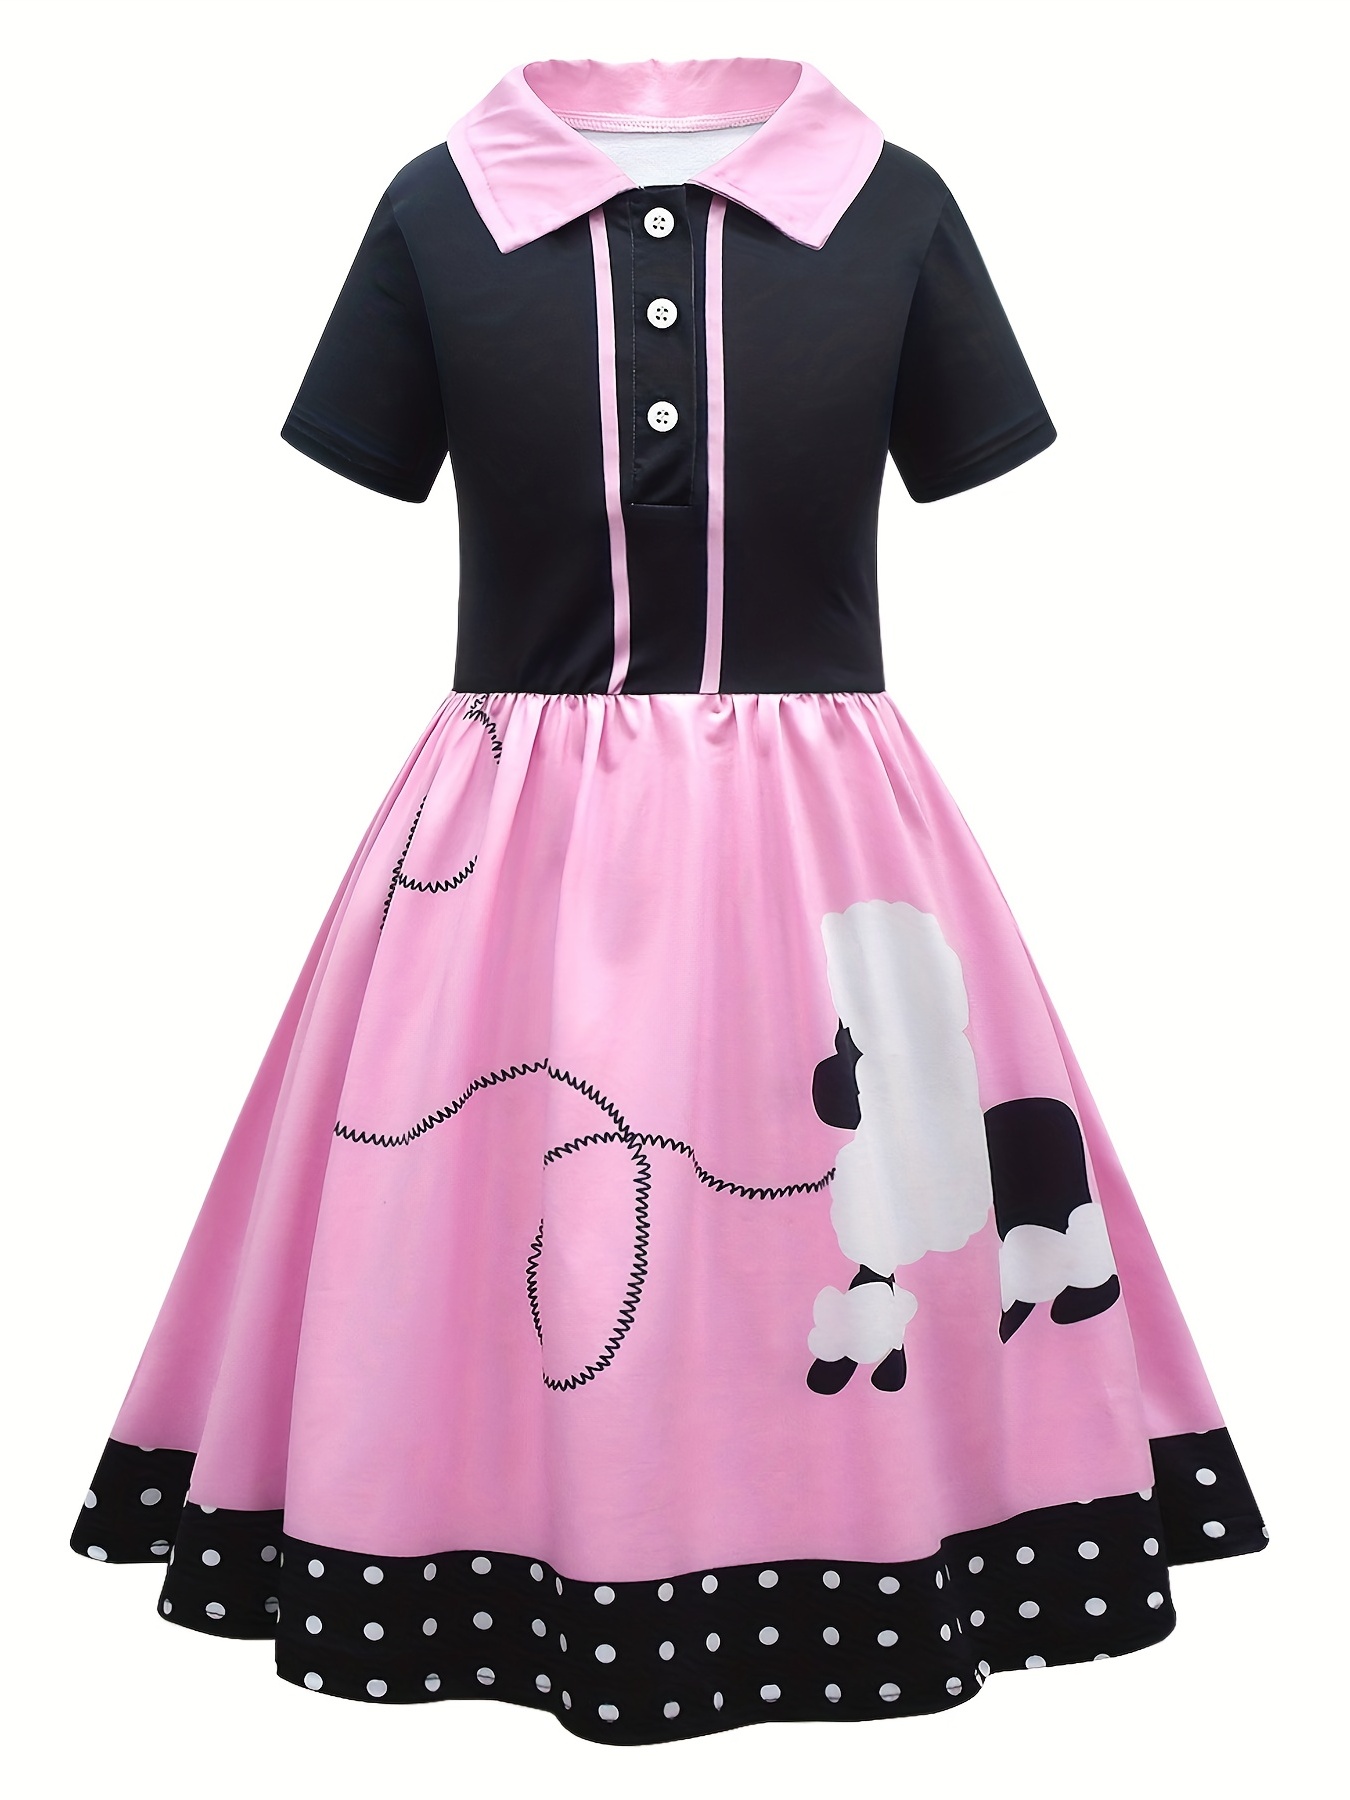 ハロウィン50年代の女の子用コスチューム、キッズダディーダウターホップスカート用プードルスカートドレス